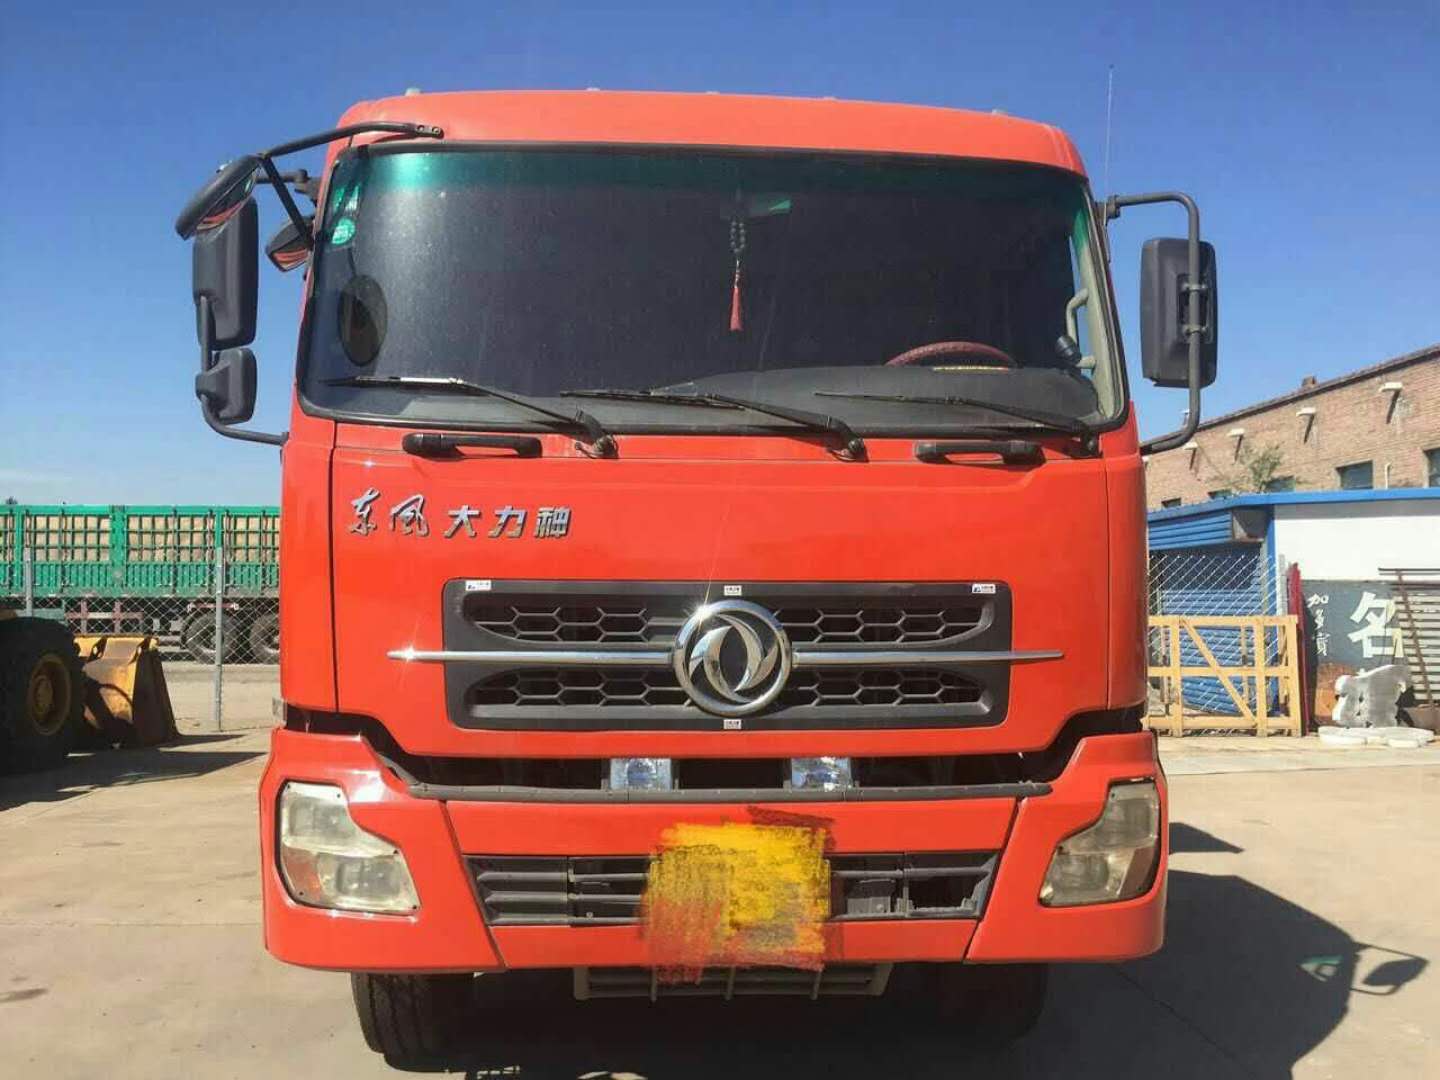 山西忻州信达二手车长期出售前四后八轻皮自卸车 其他二手交通工具